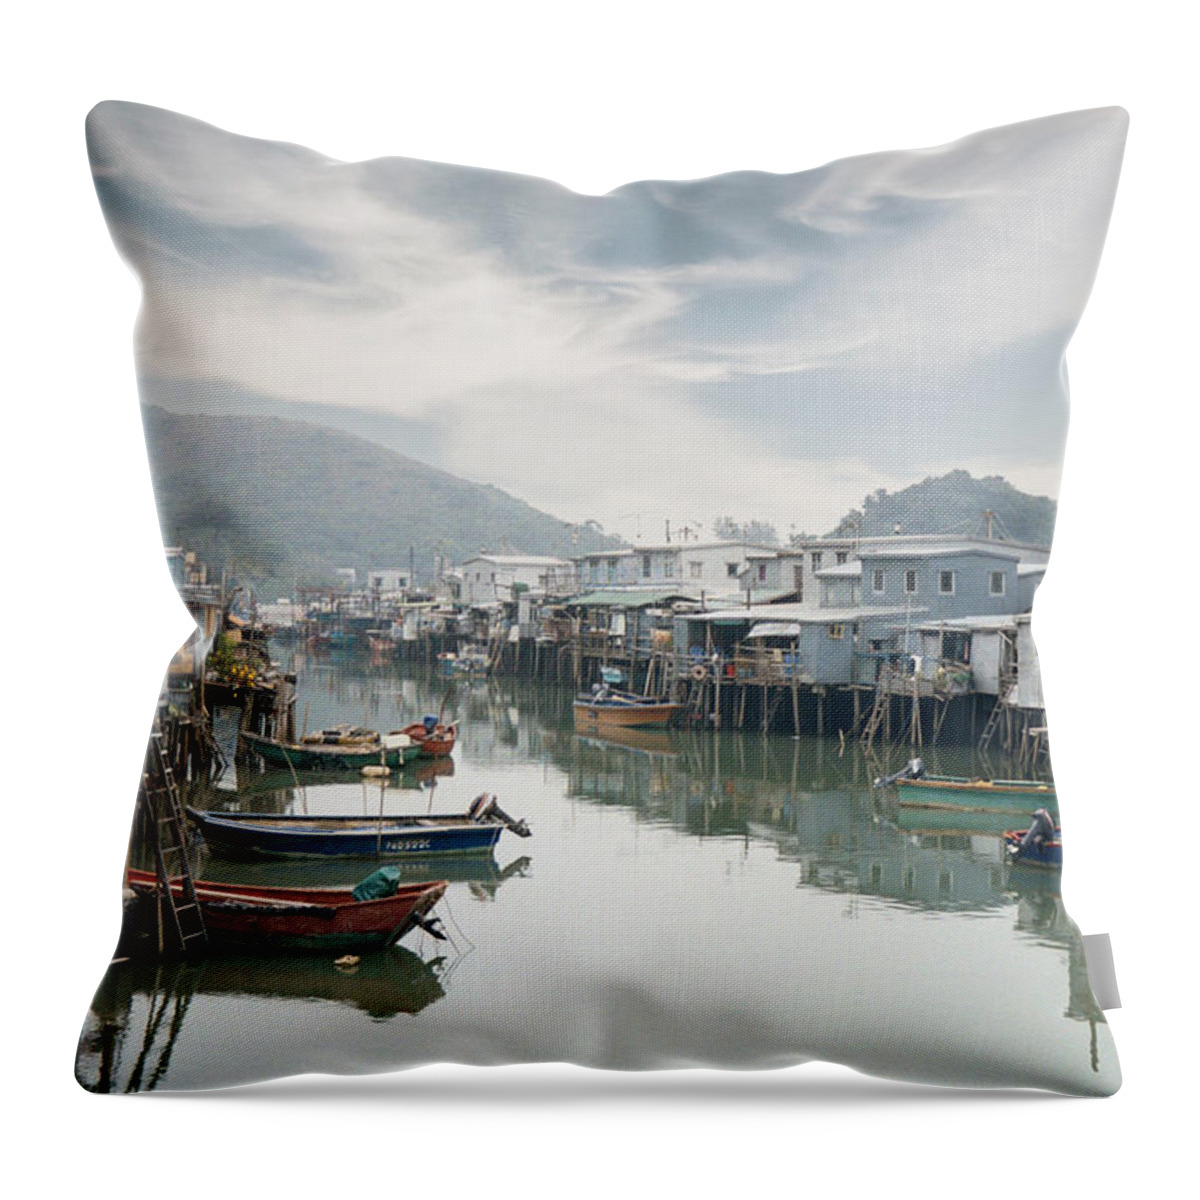 Hong Kong Throw Pillow featuring the photograph Stilt Village by Geoff Jewett